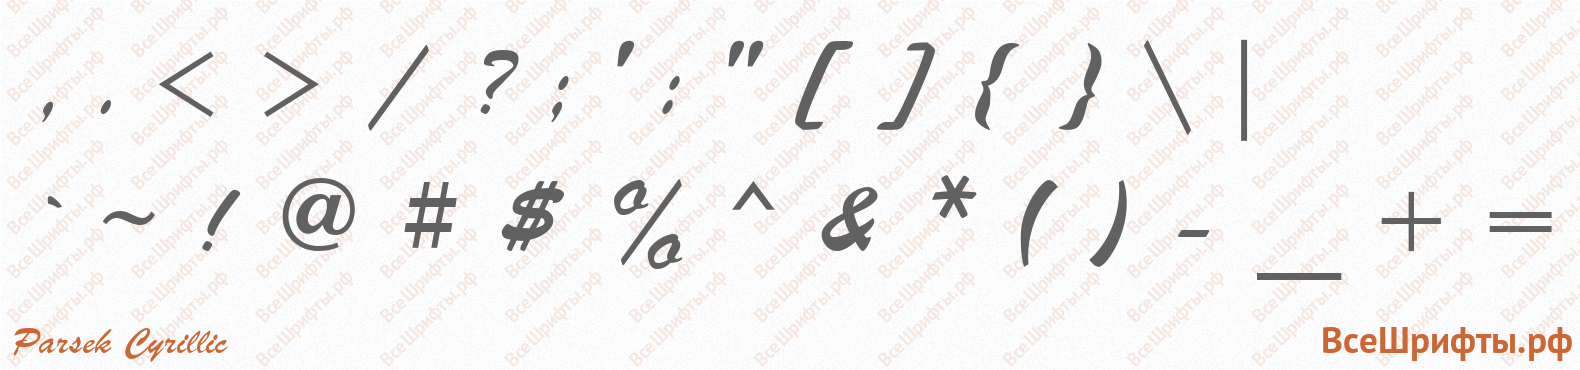 Шрифт Parsek Cyrillic со знаками препинания и пунктуации